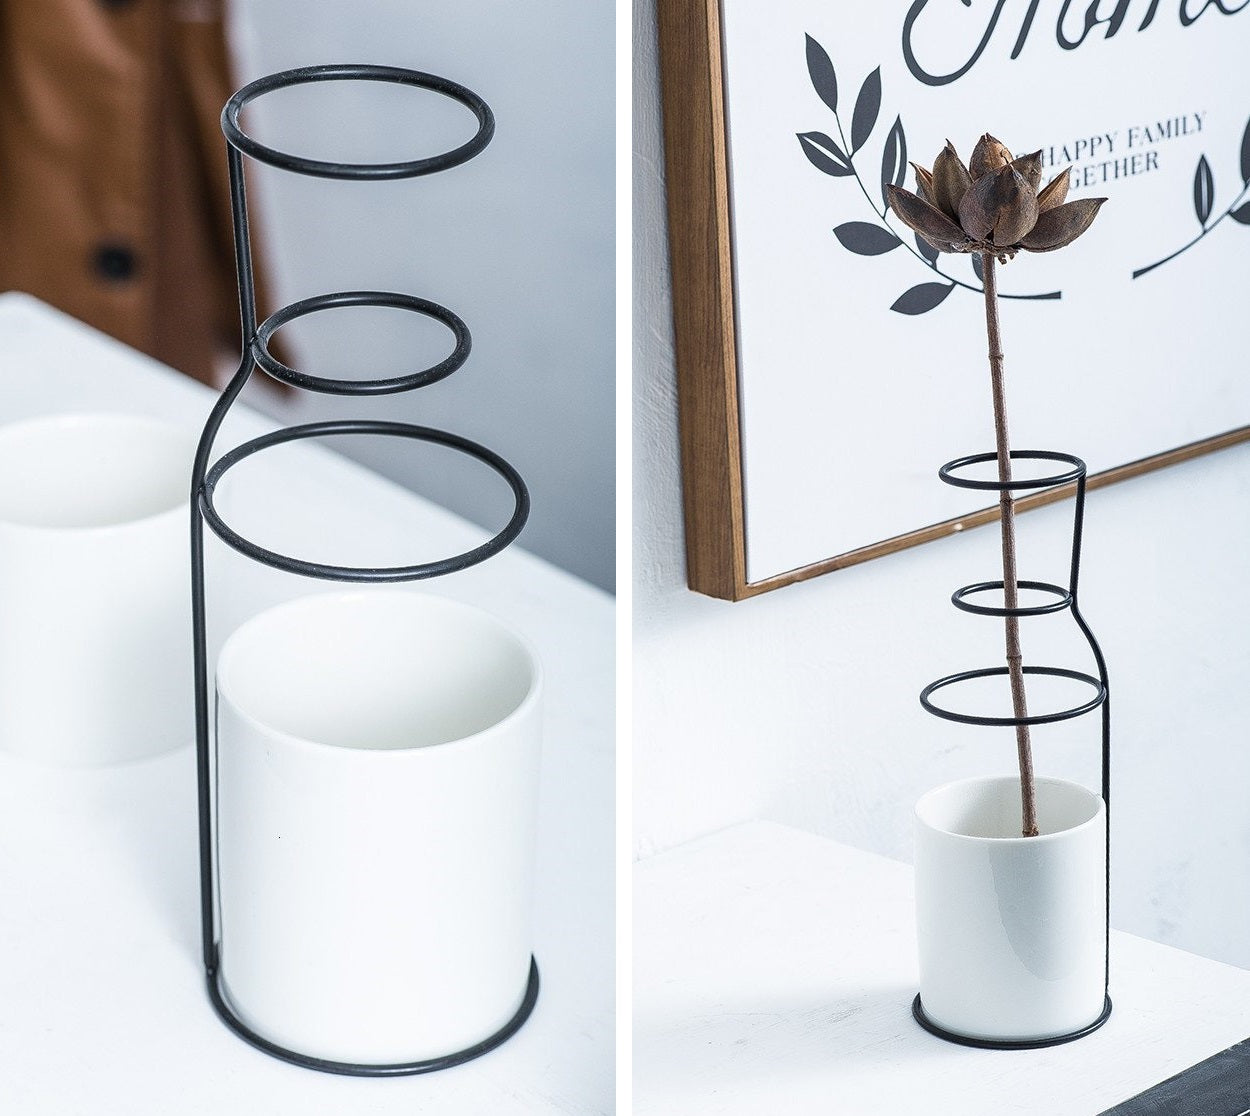 Minimalist Milk Bottle Style Flower Vase